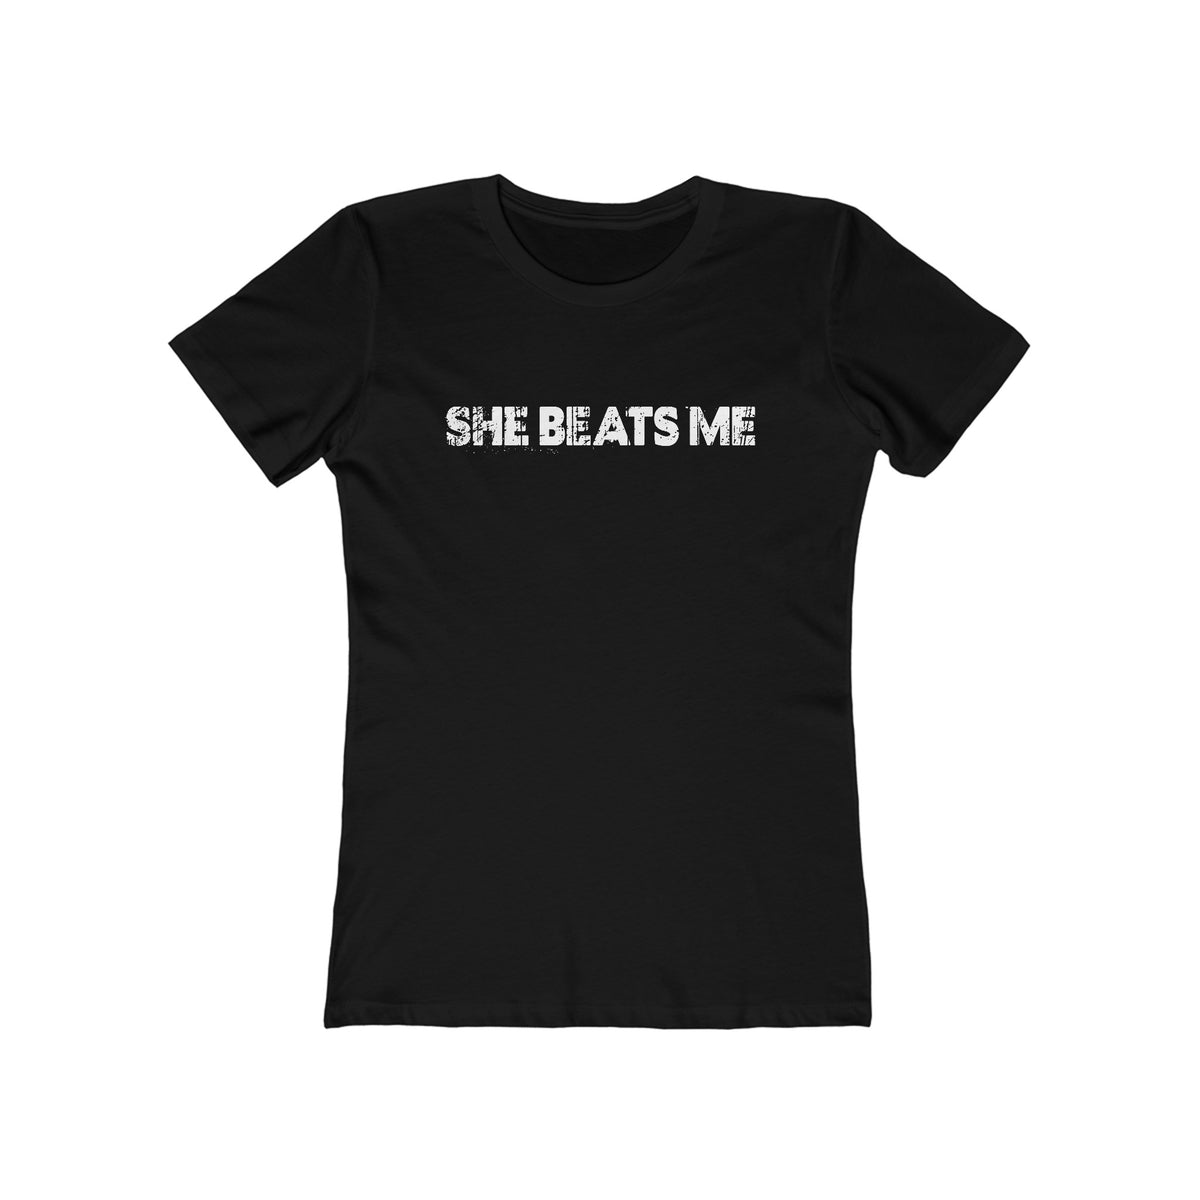 She Beats Me - Women’s T-Shirt